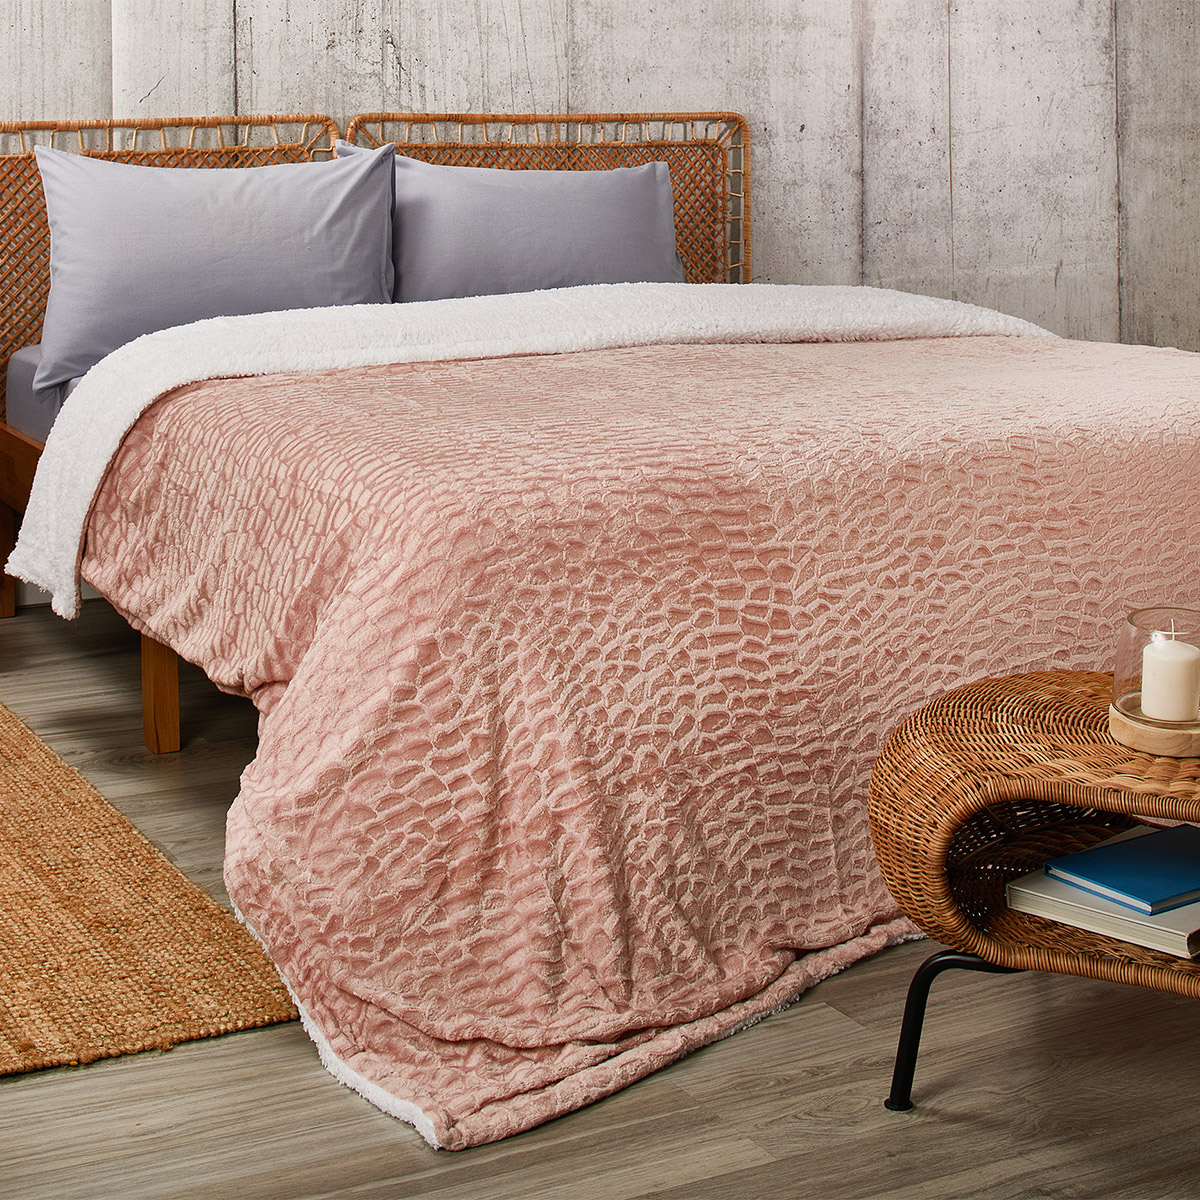 Κουβέρτα Fleece Υπέρδιπλη Με Γουνάκι (220×240) Whitegg KB126-3 Pink